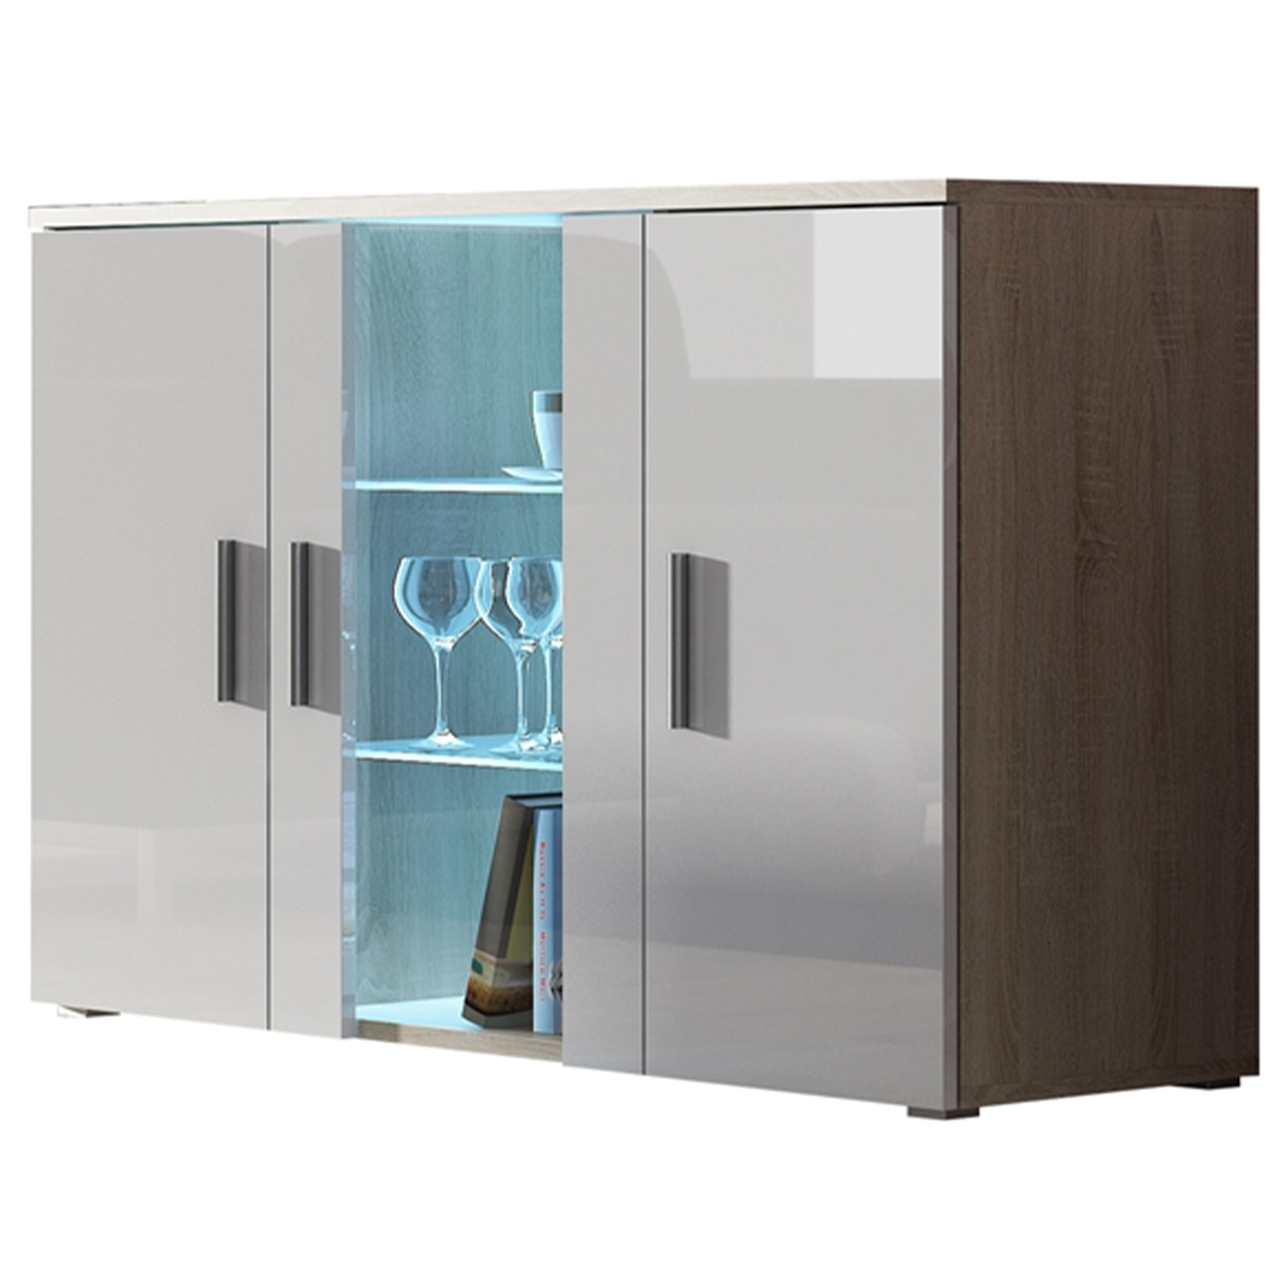 Storage cabinet SOHO SH8E sonoma oak / white gloss